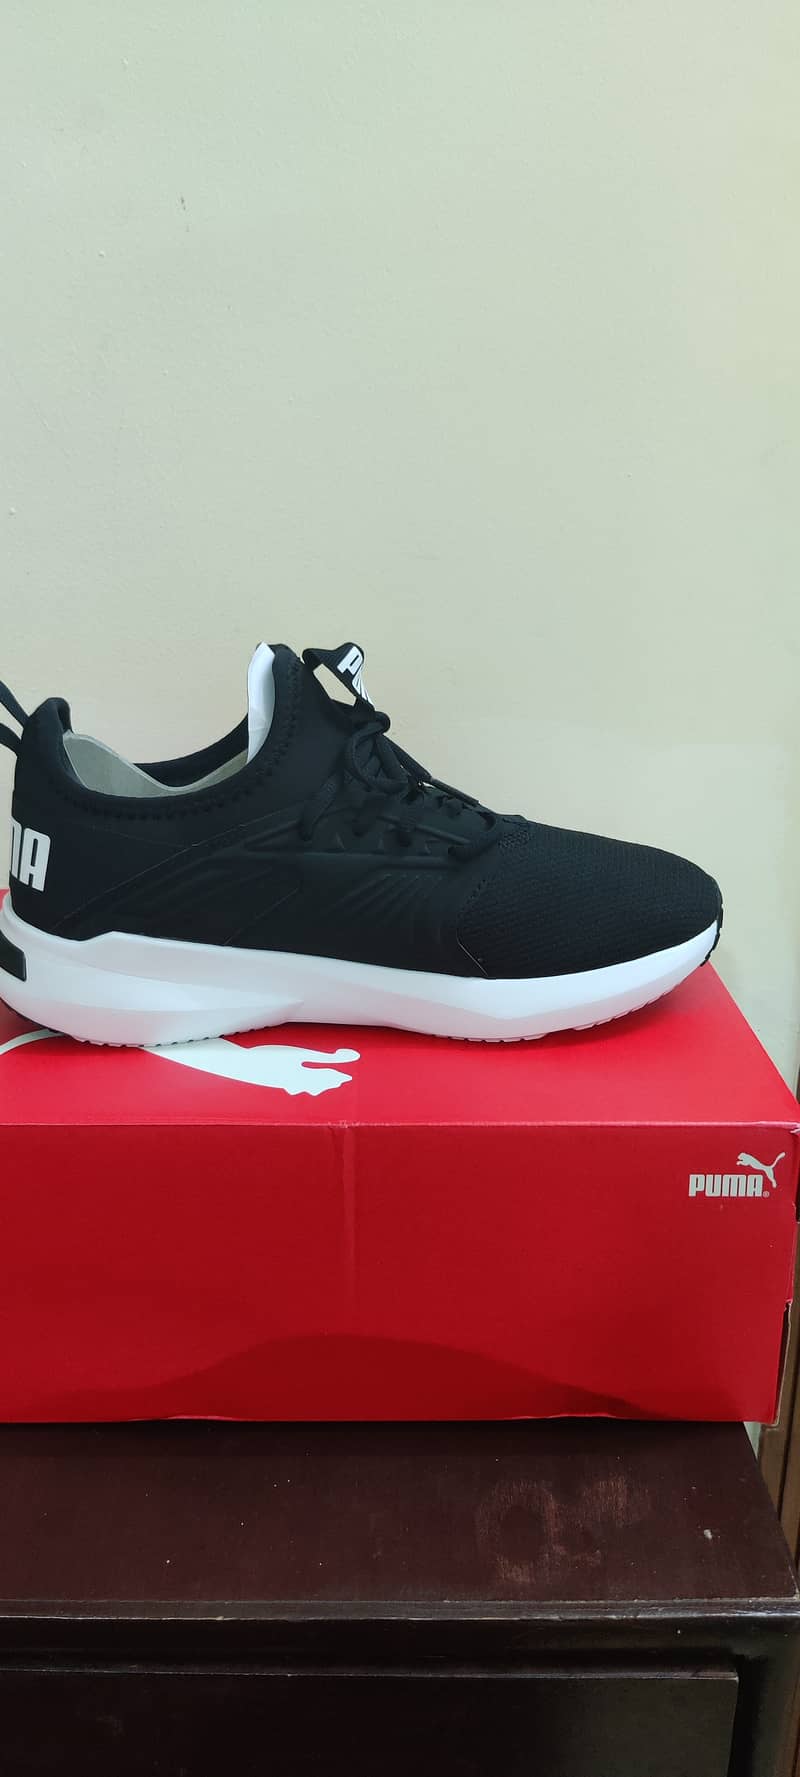 Puma shoes New 2